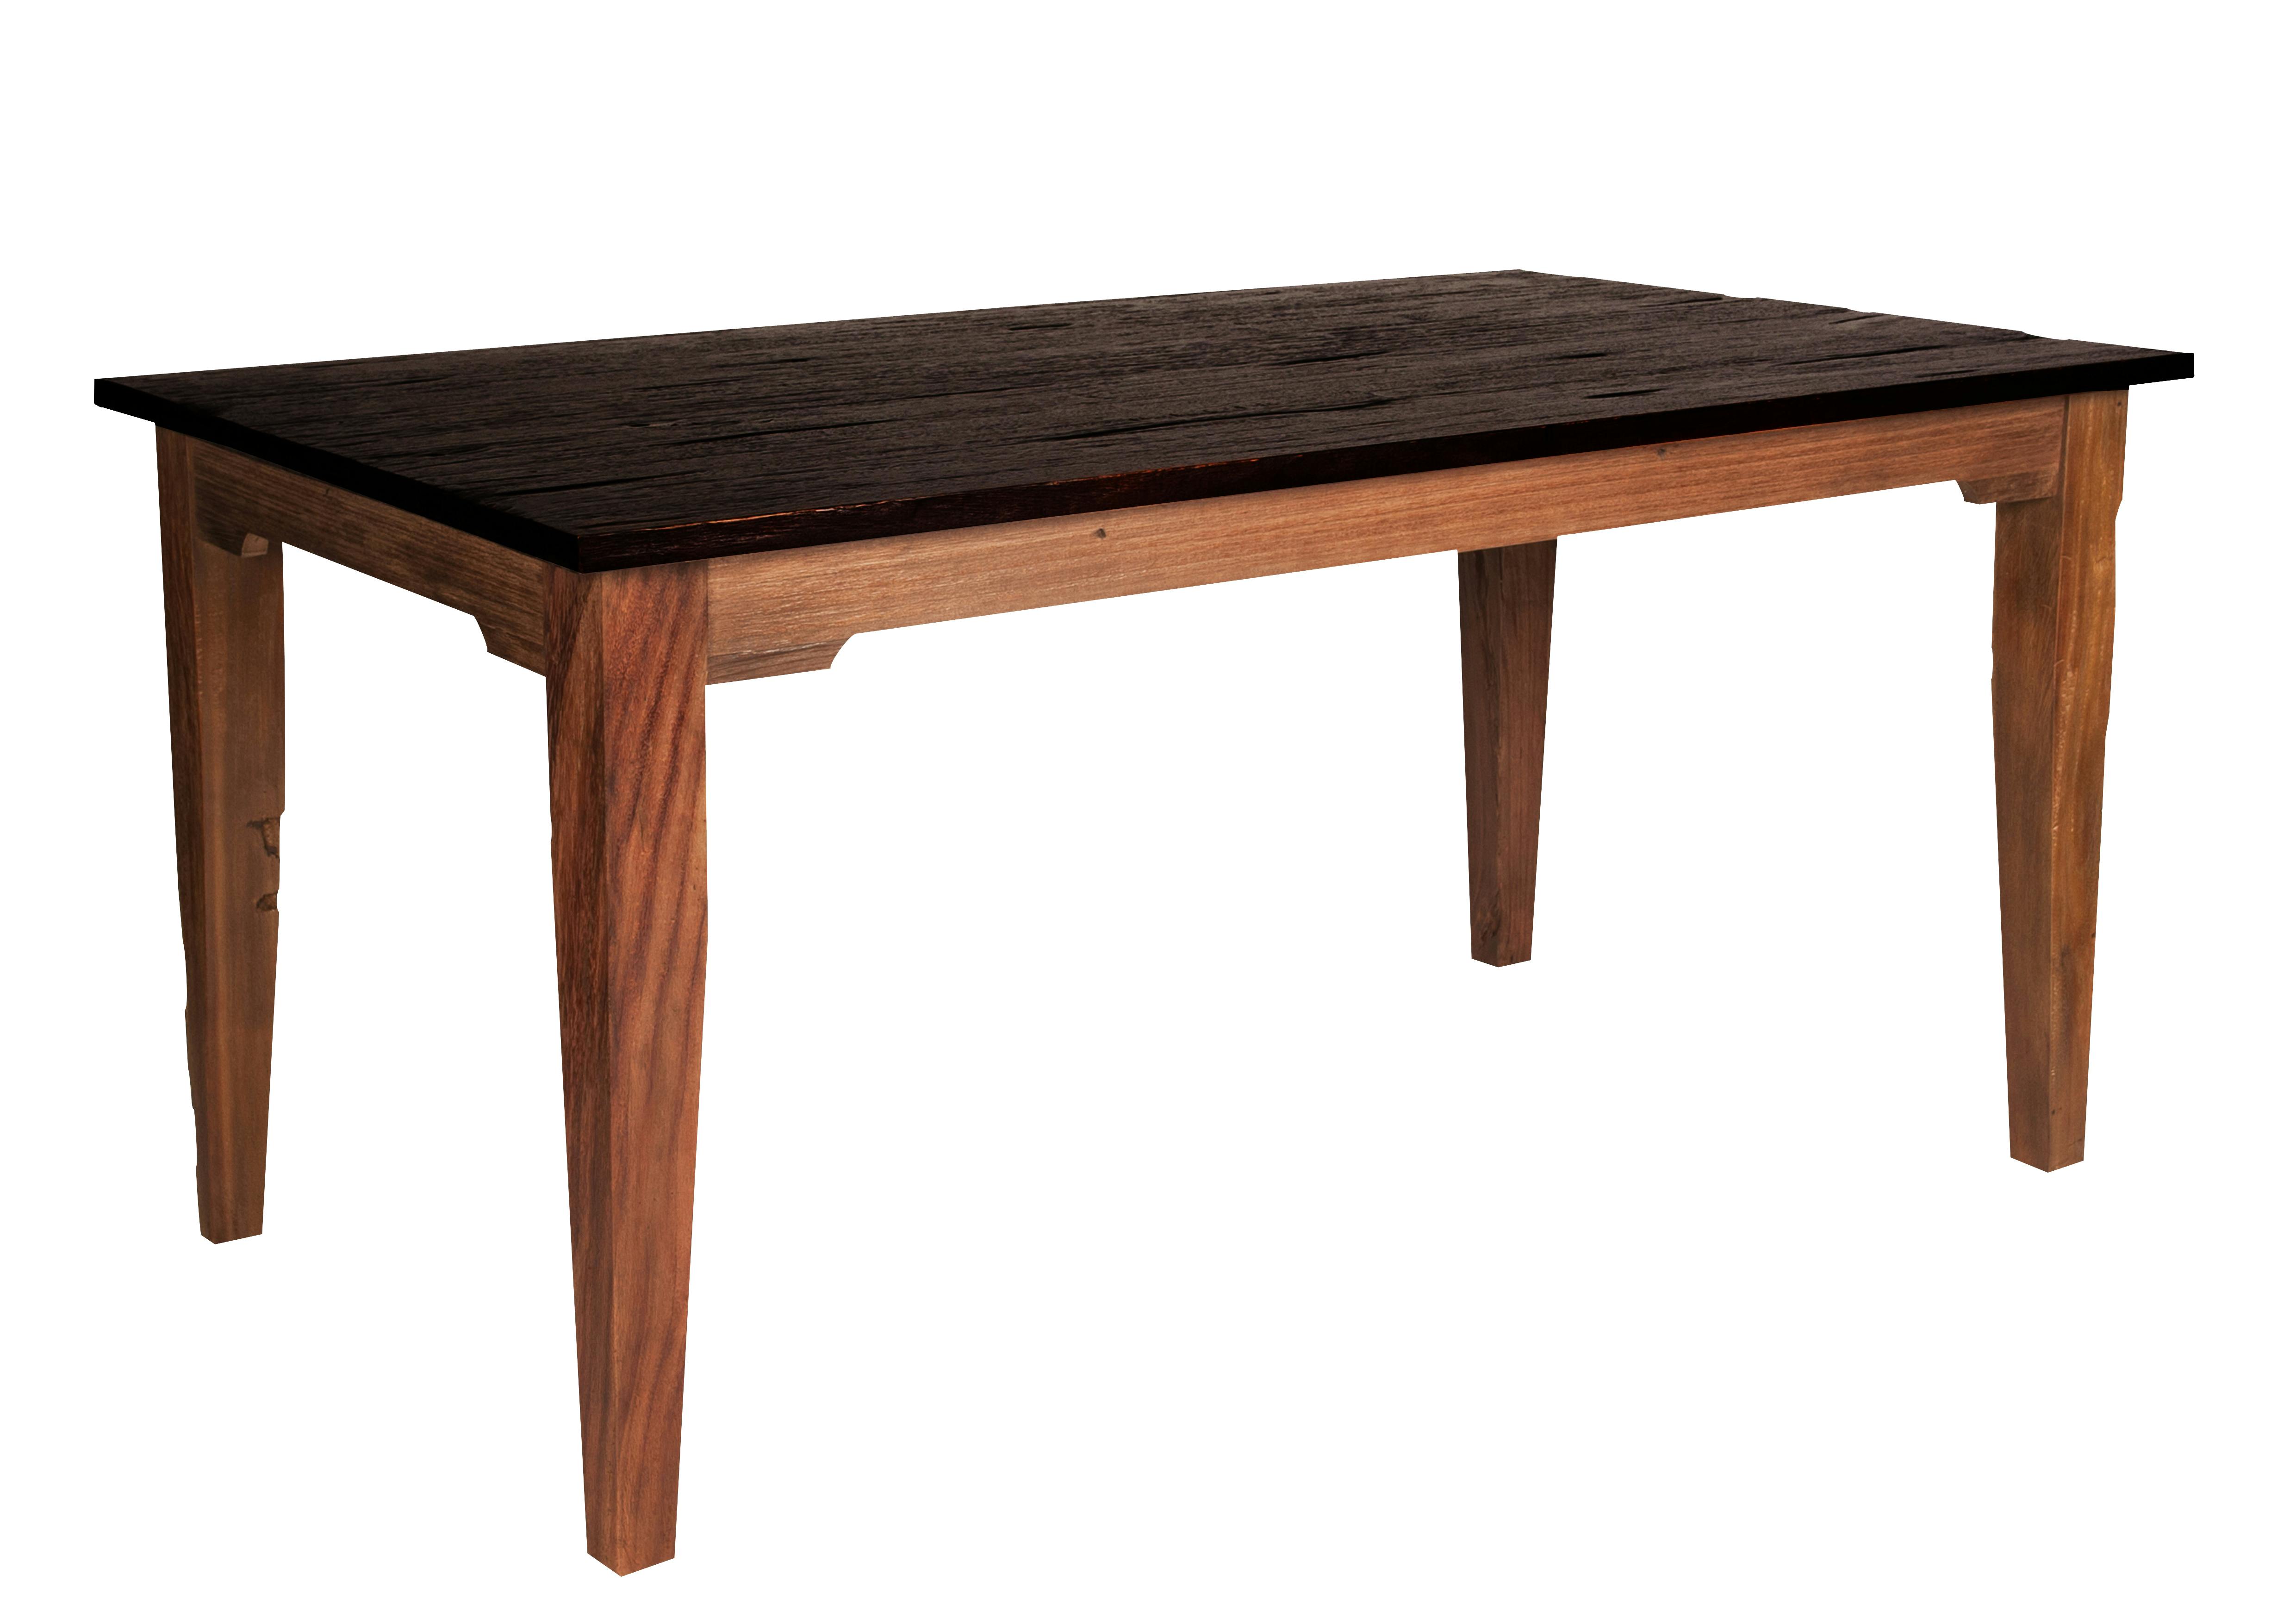 SIT Möbel SEADRIFT Tisch 160 x 90 cm rechteckig, 4 Beine, mit dunkel  abgesetzter Platte